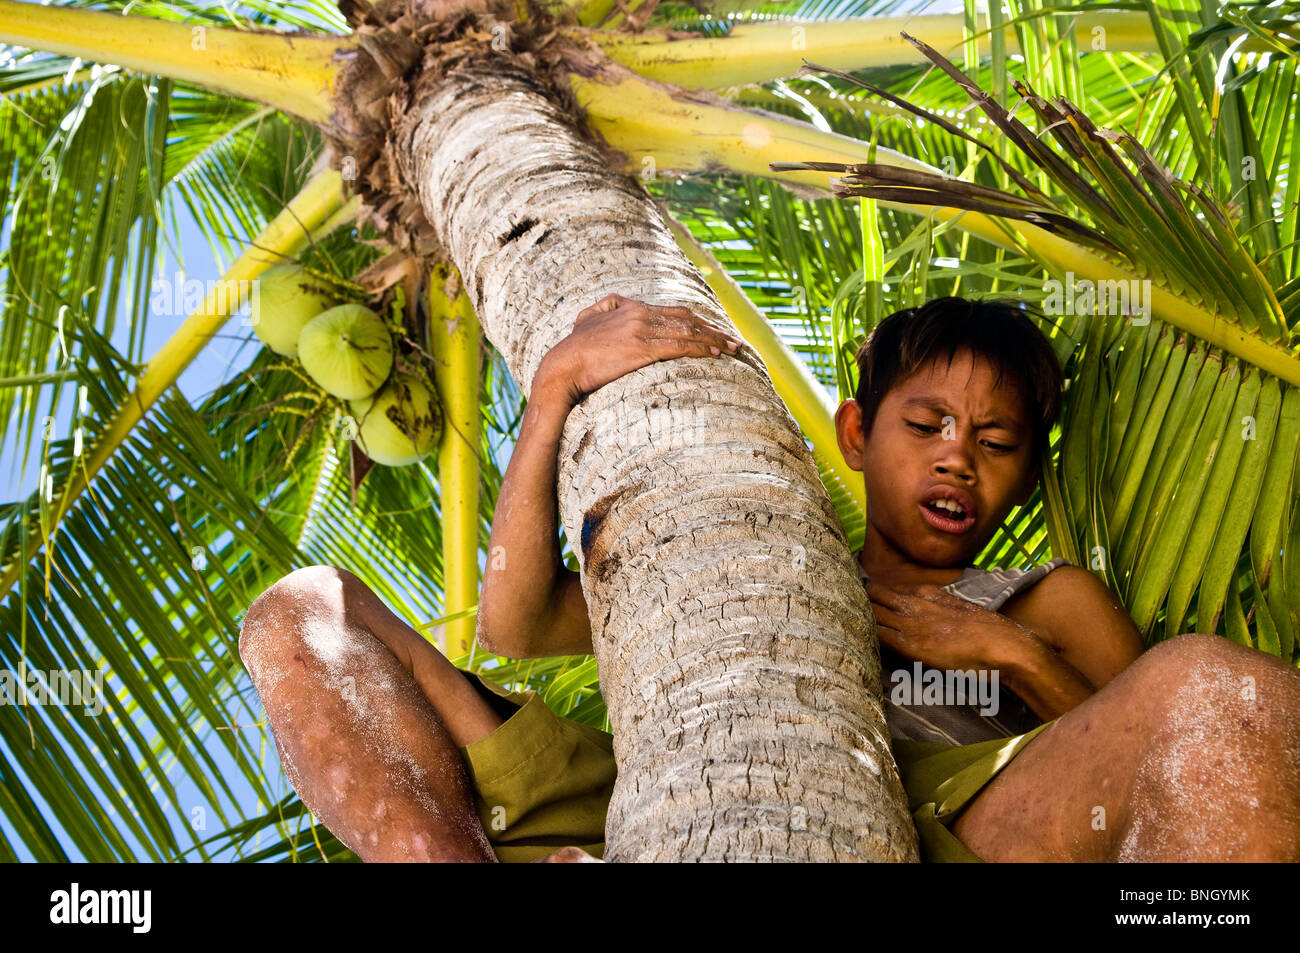 A Filipino boy climbing up a coconut tree. Stock Photo